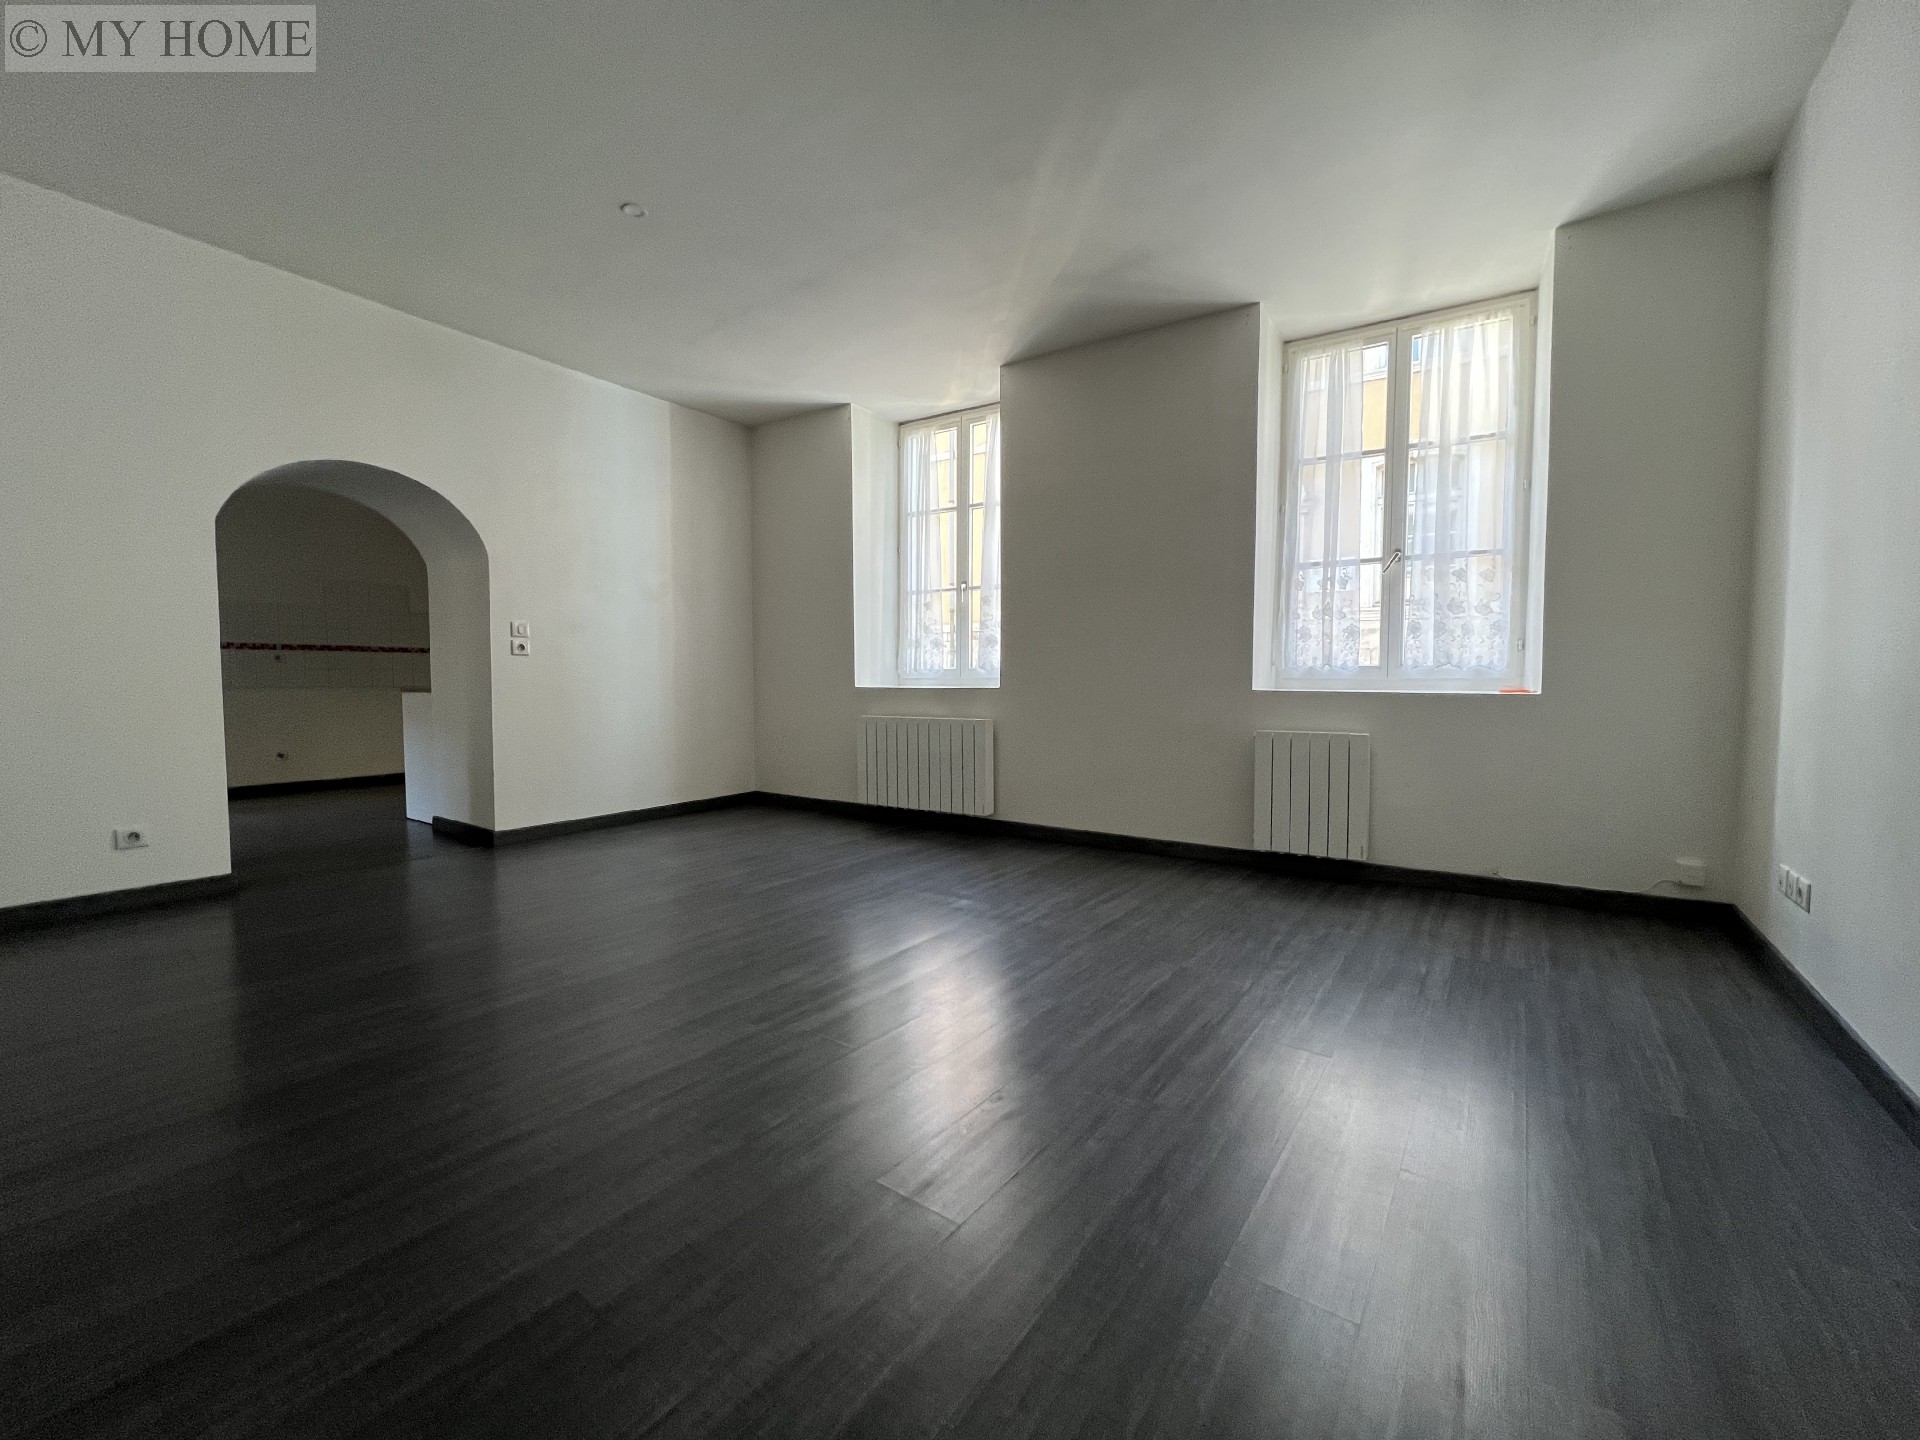 Vente appartement - TOUL 92 m², 4 pièces